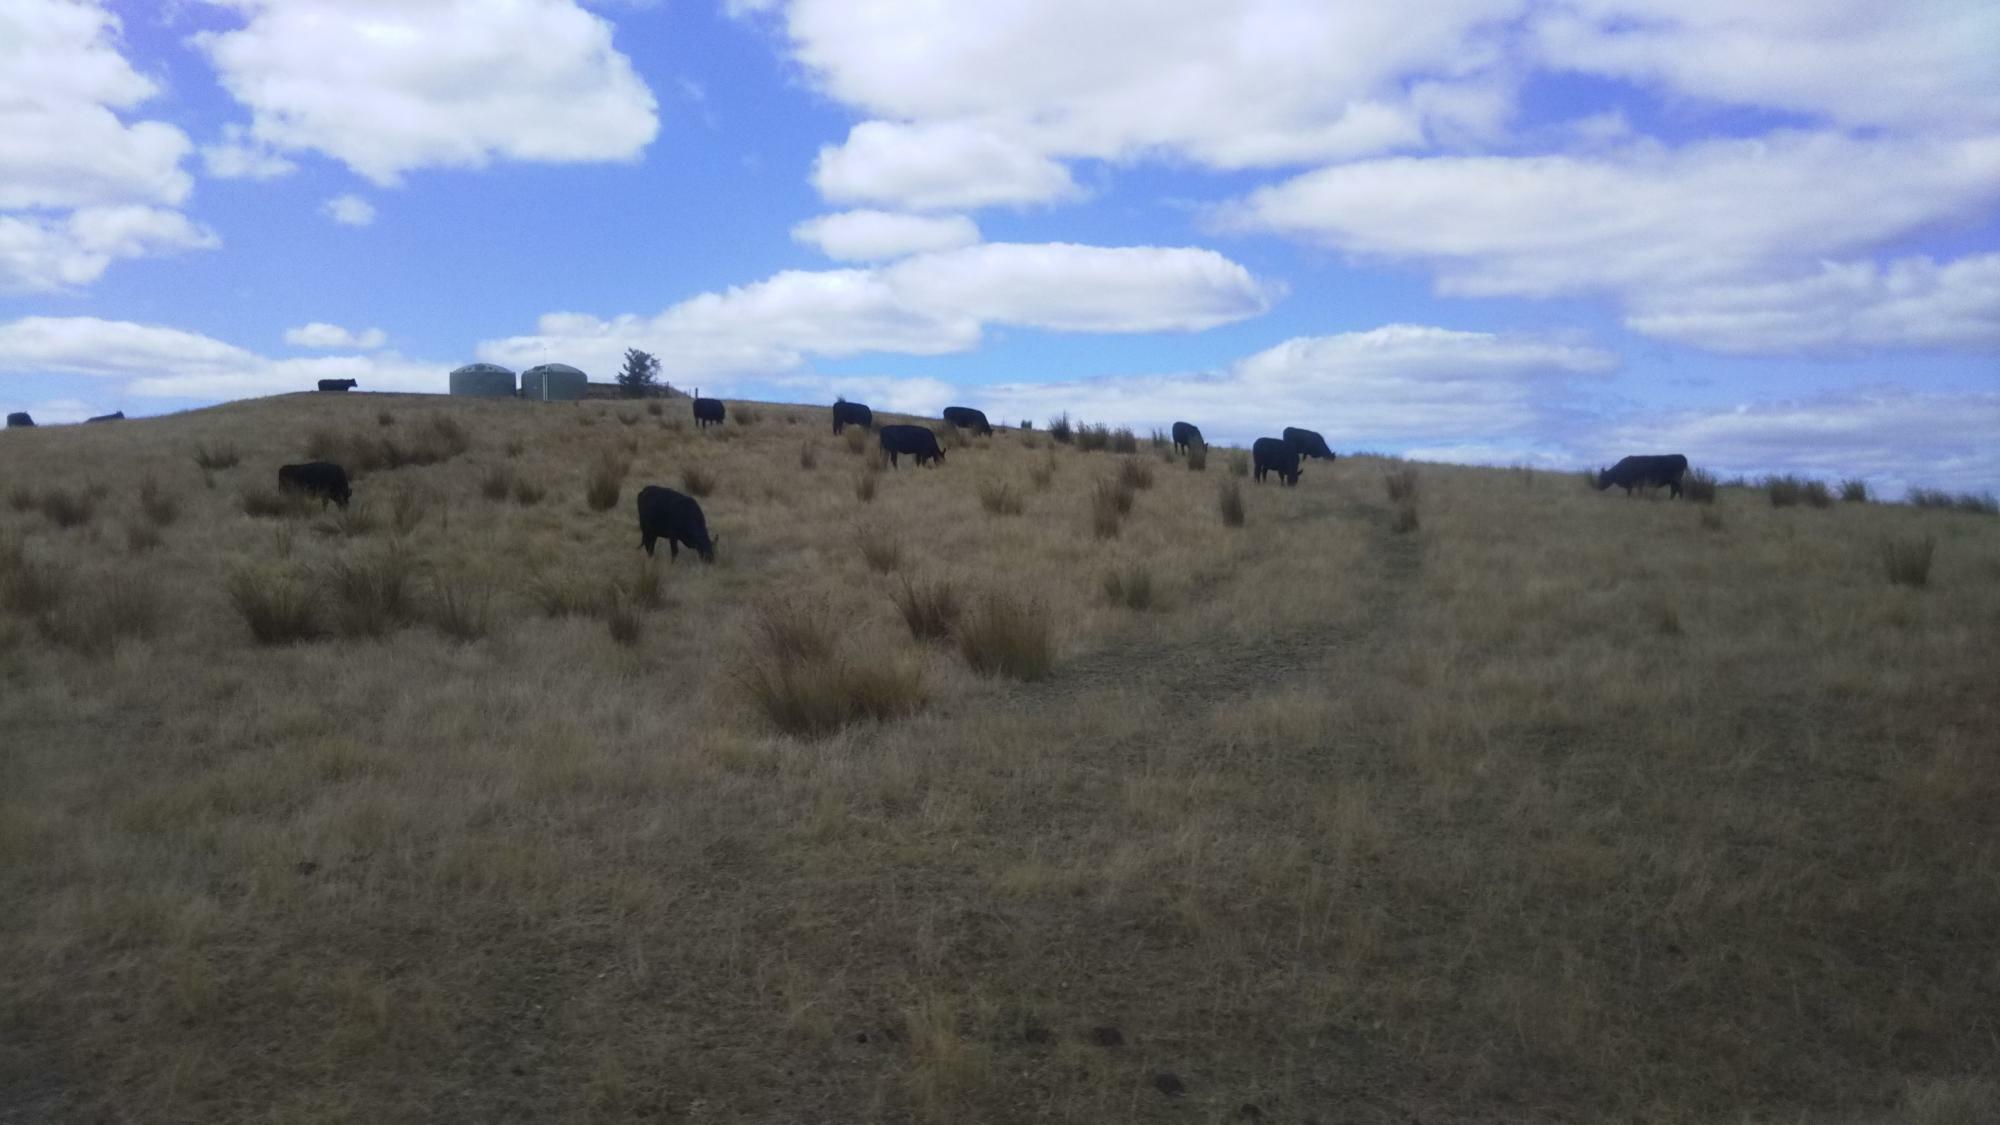 バスの車窓から見える牛の群れ。ロケ地であると共に牧場であることを再認識（2020年筆者撮影）。